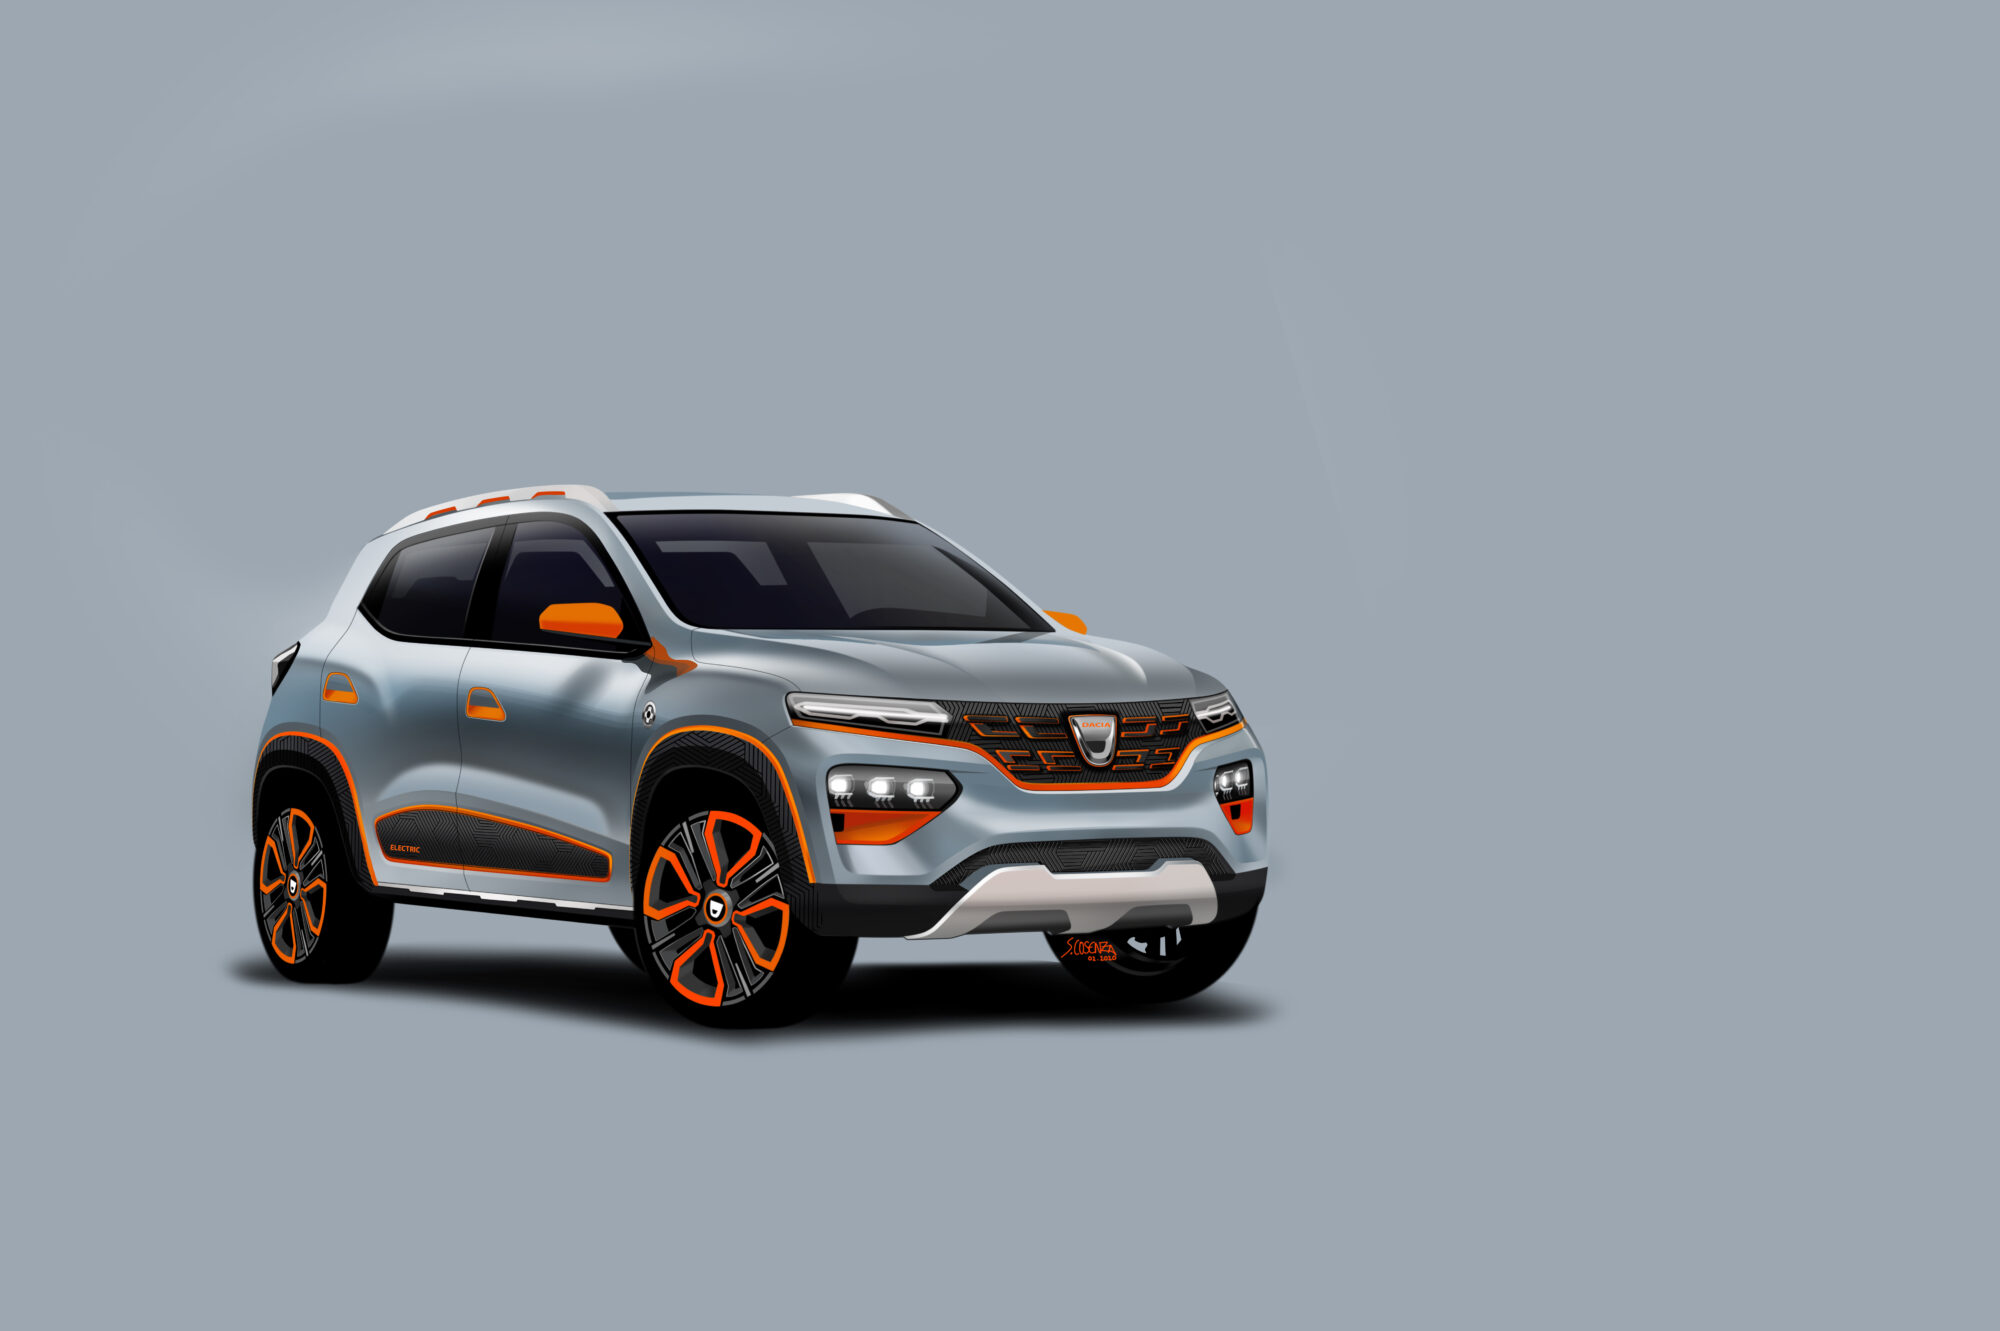 2020 - Dacia SPRING show car